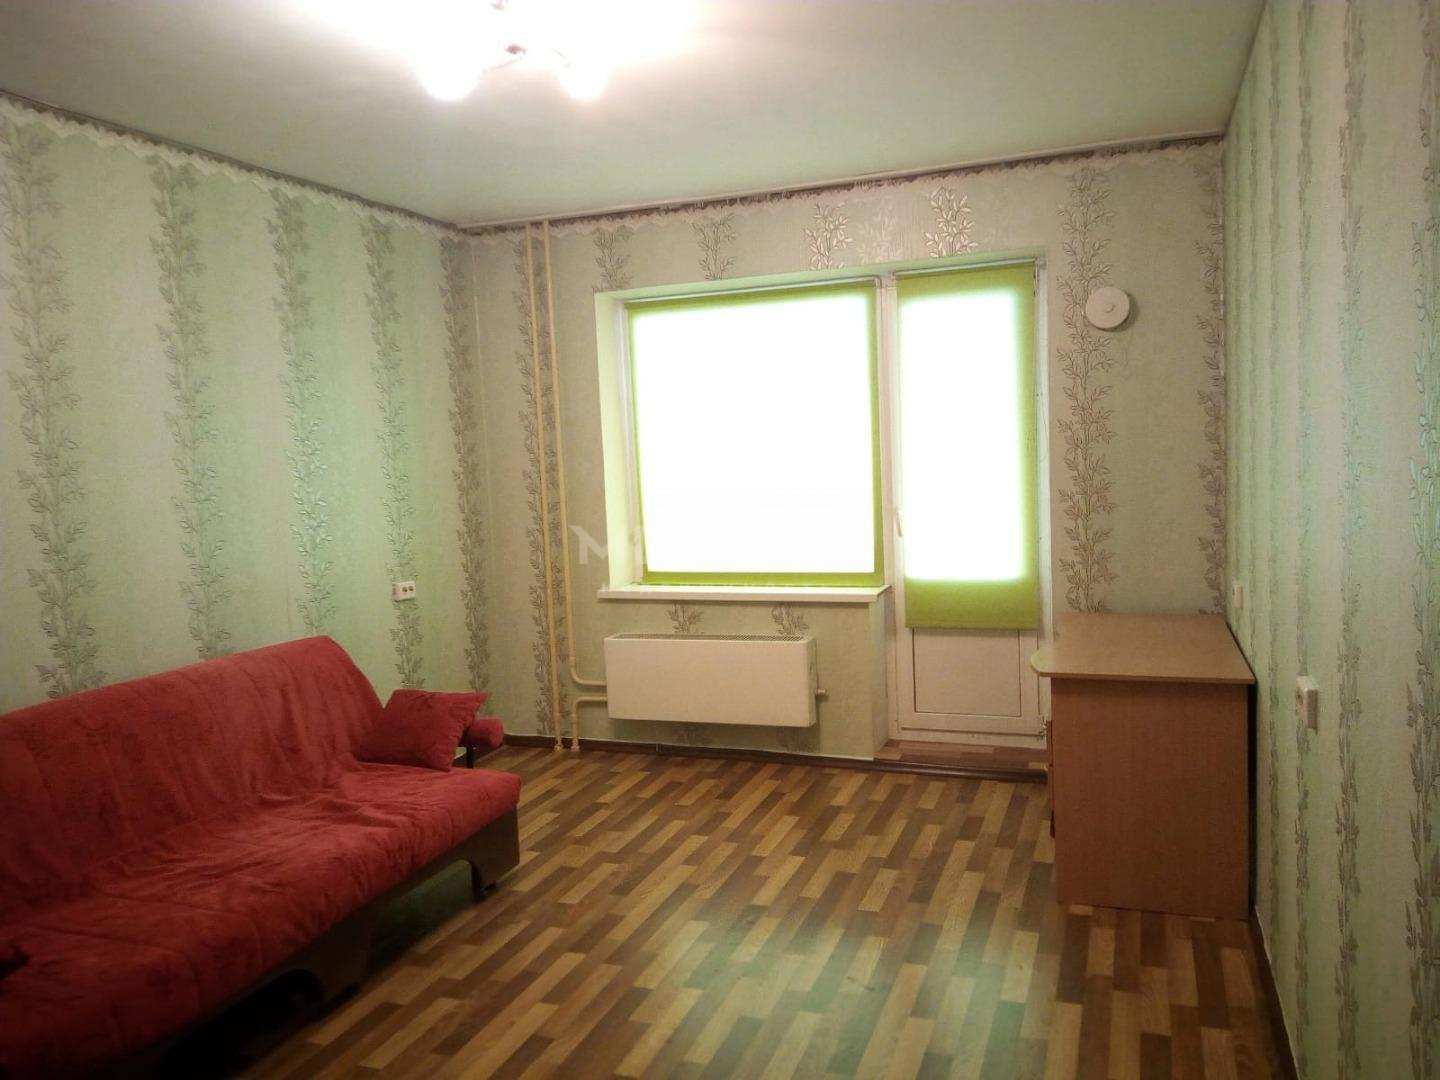 Сибиряков-Гвардейцев, 82, 1-комнатная квартира